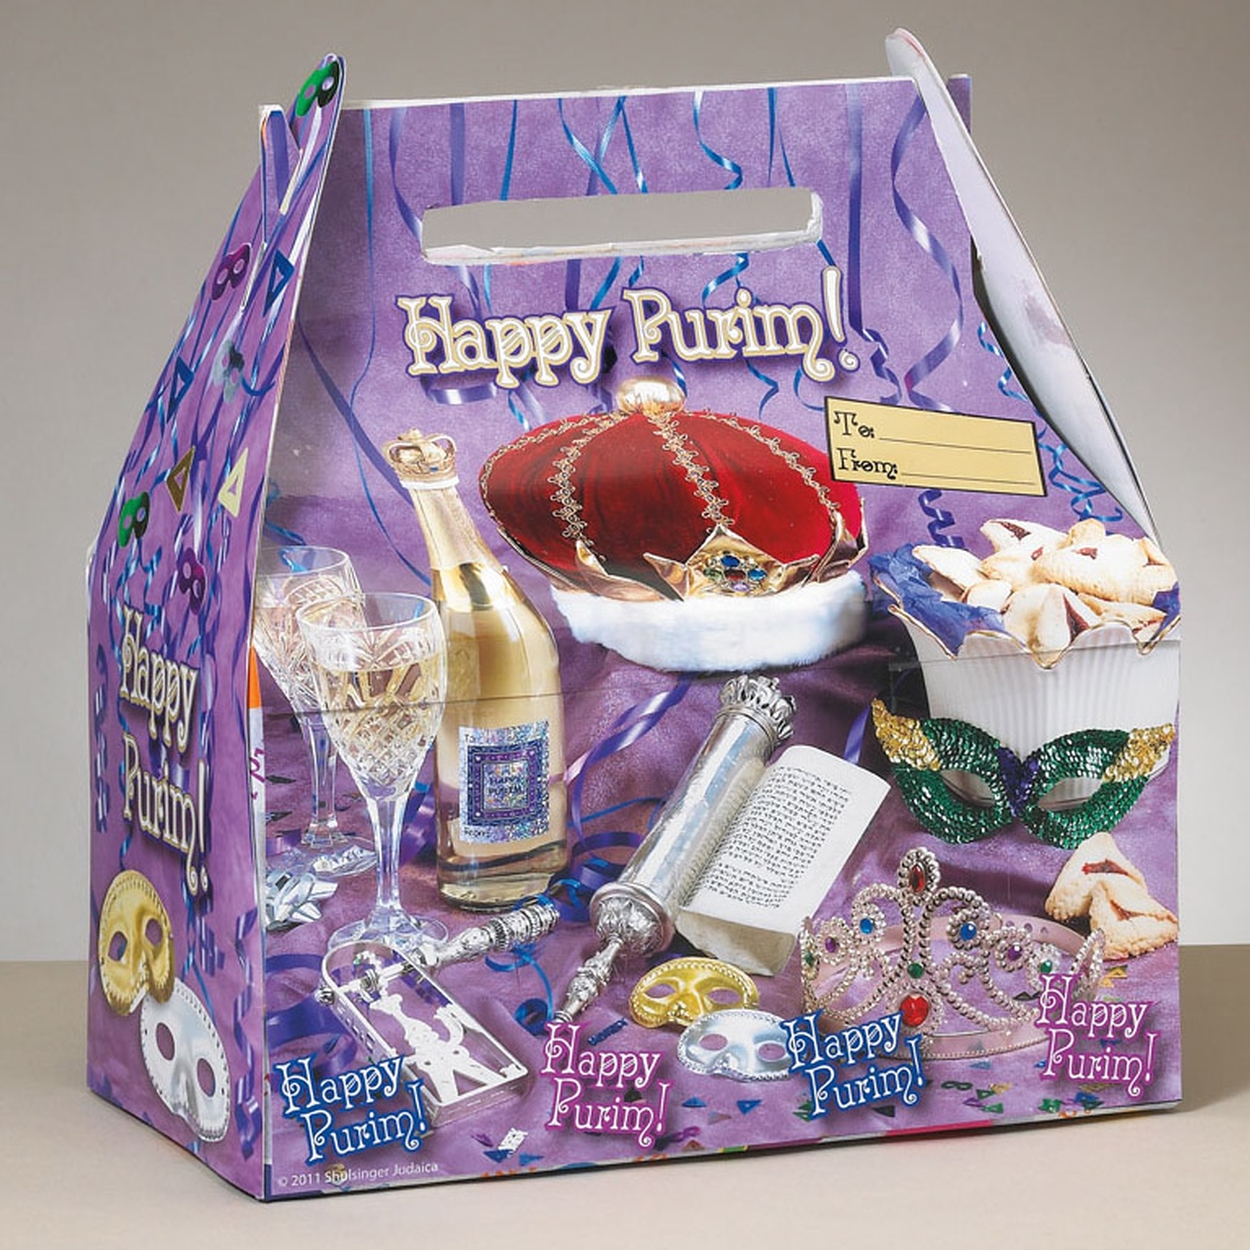 Happy Purim! Gift Box • Purim Gifts & Mishloach Manos Supplies • Purim